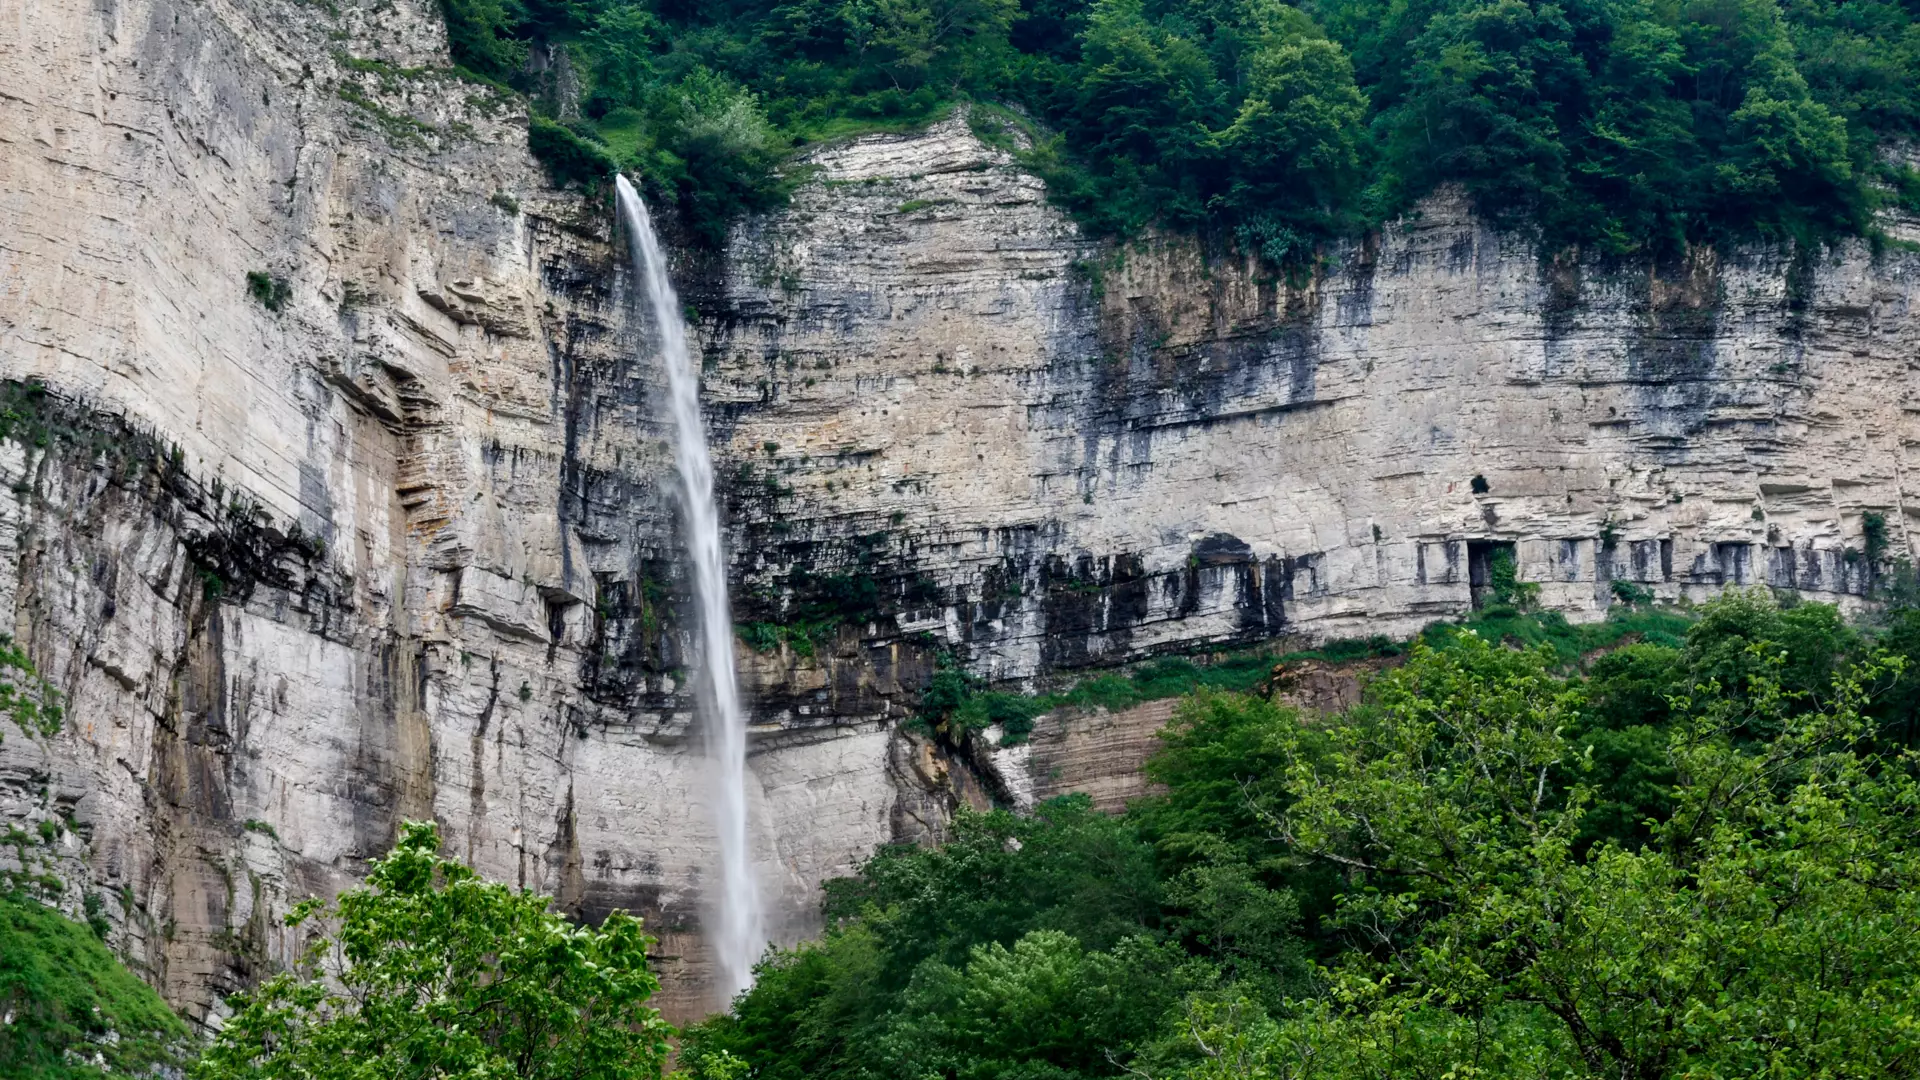 Kinchkha waterfall